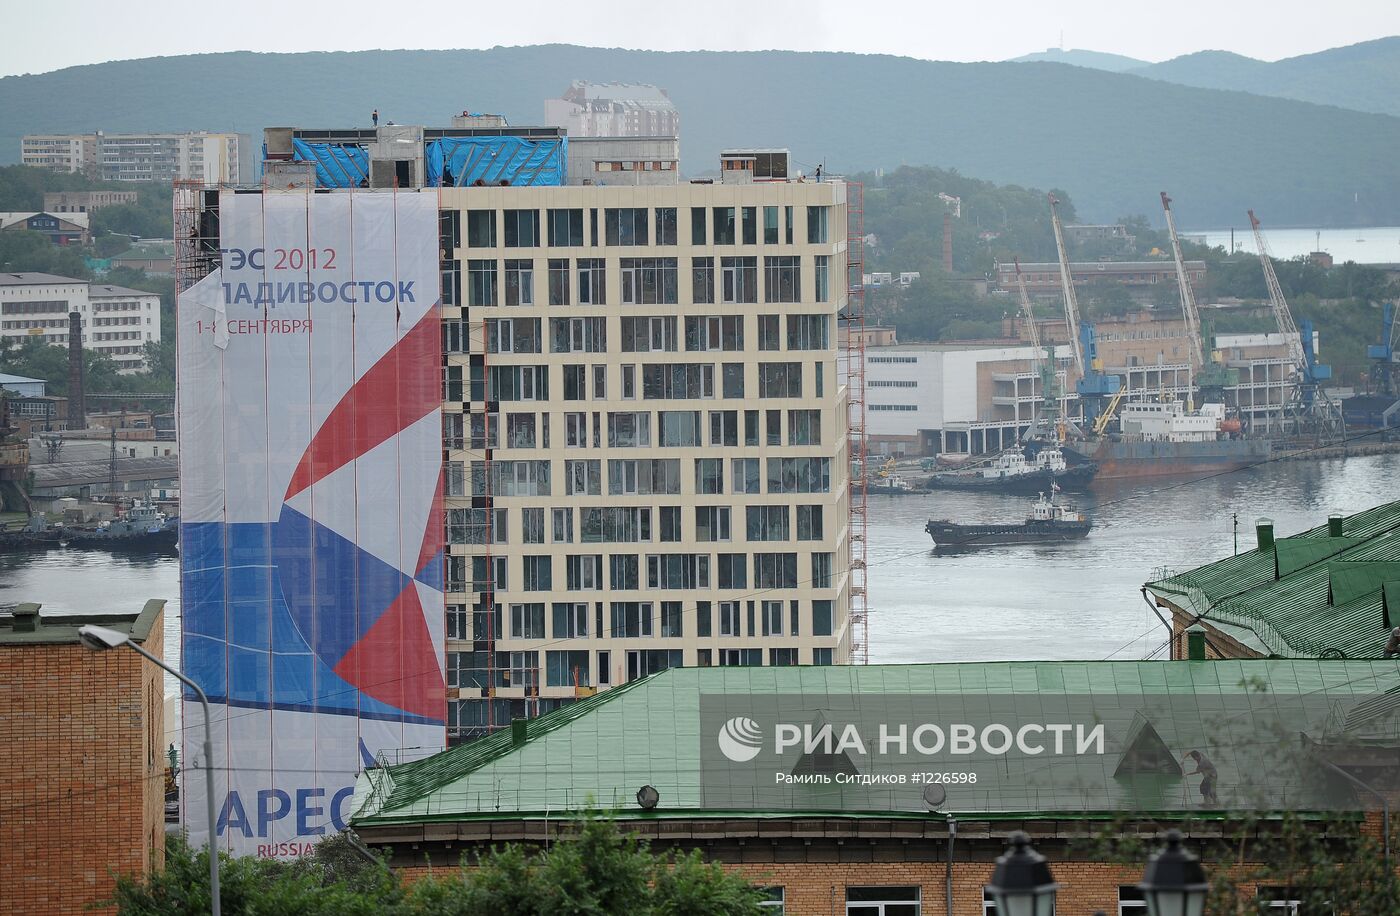 Владивосток во время саммита АТЭС-2012